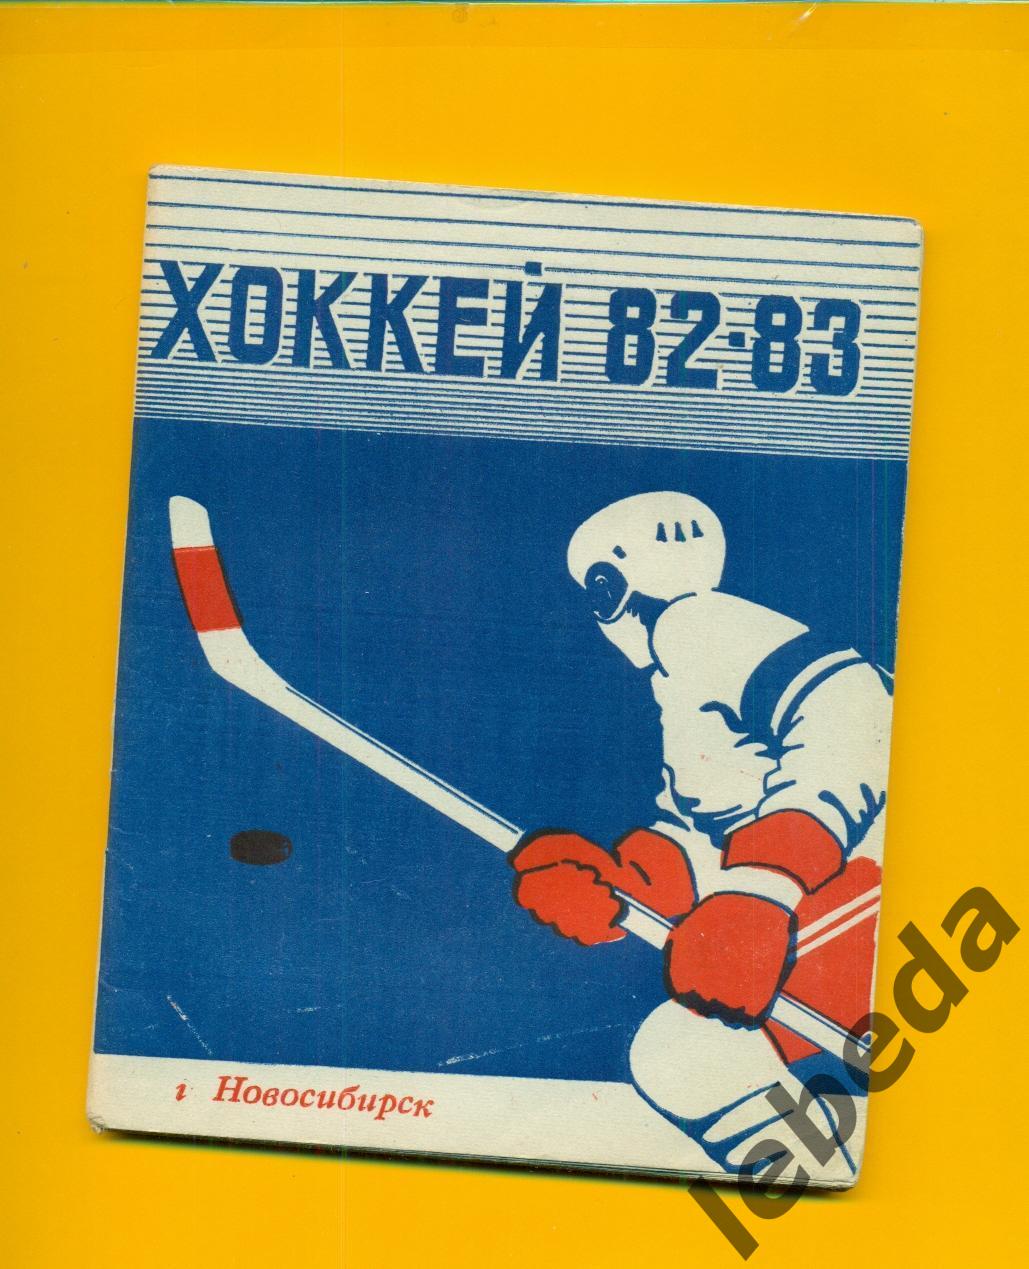 Новосибирск - 1982 / 1983 г. Хоккей.